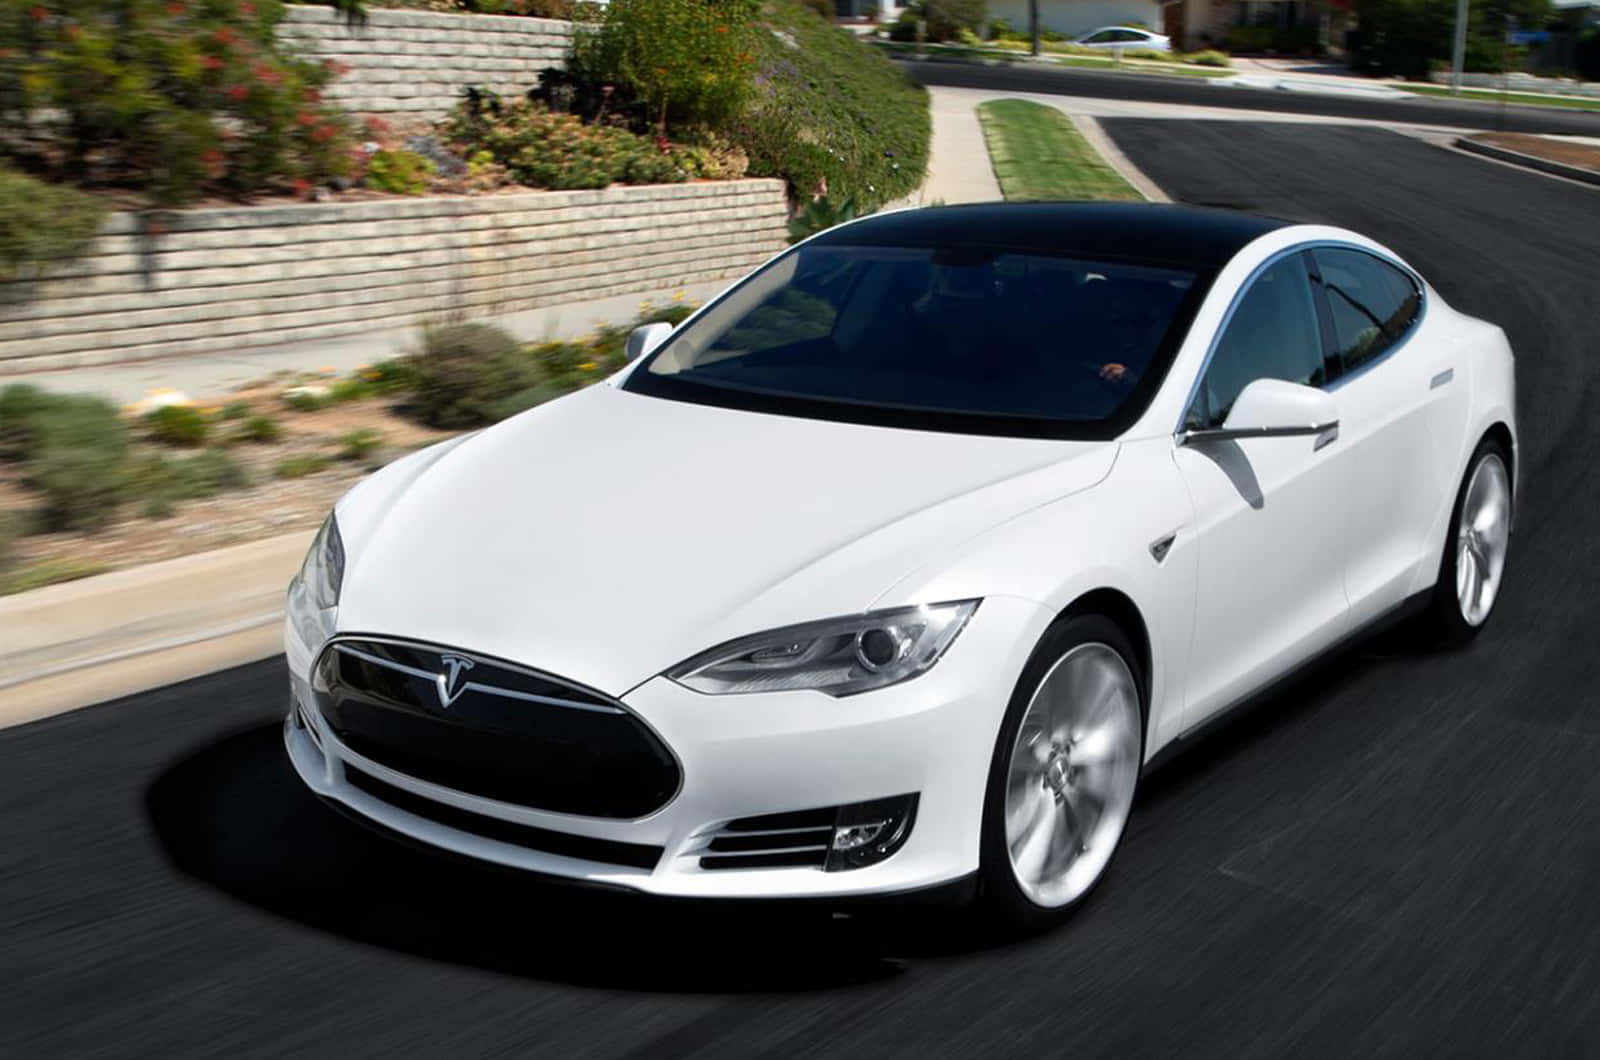 Getöntesweißes Tesla-autobild